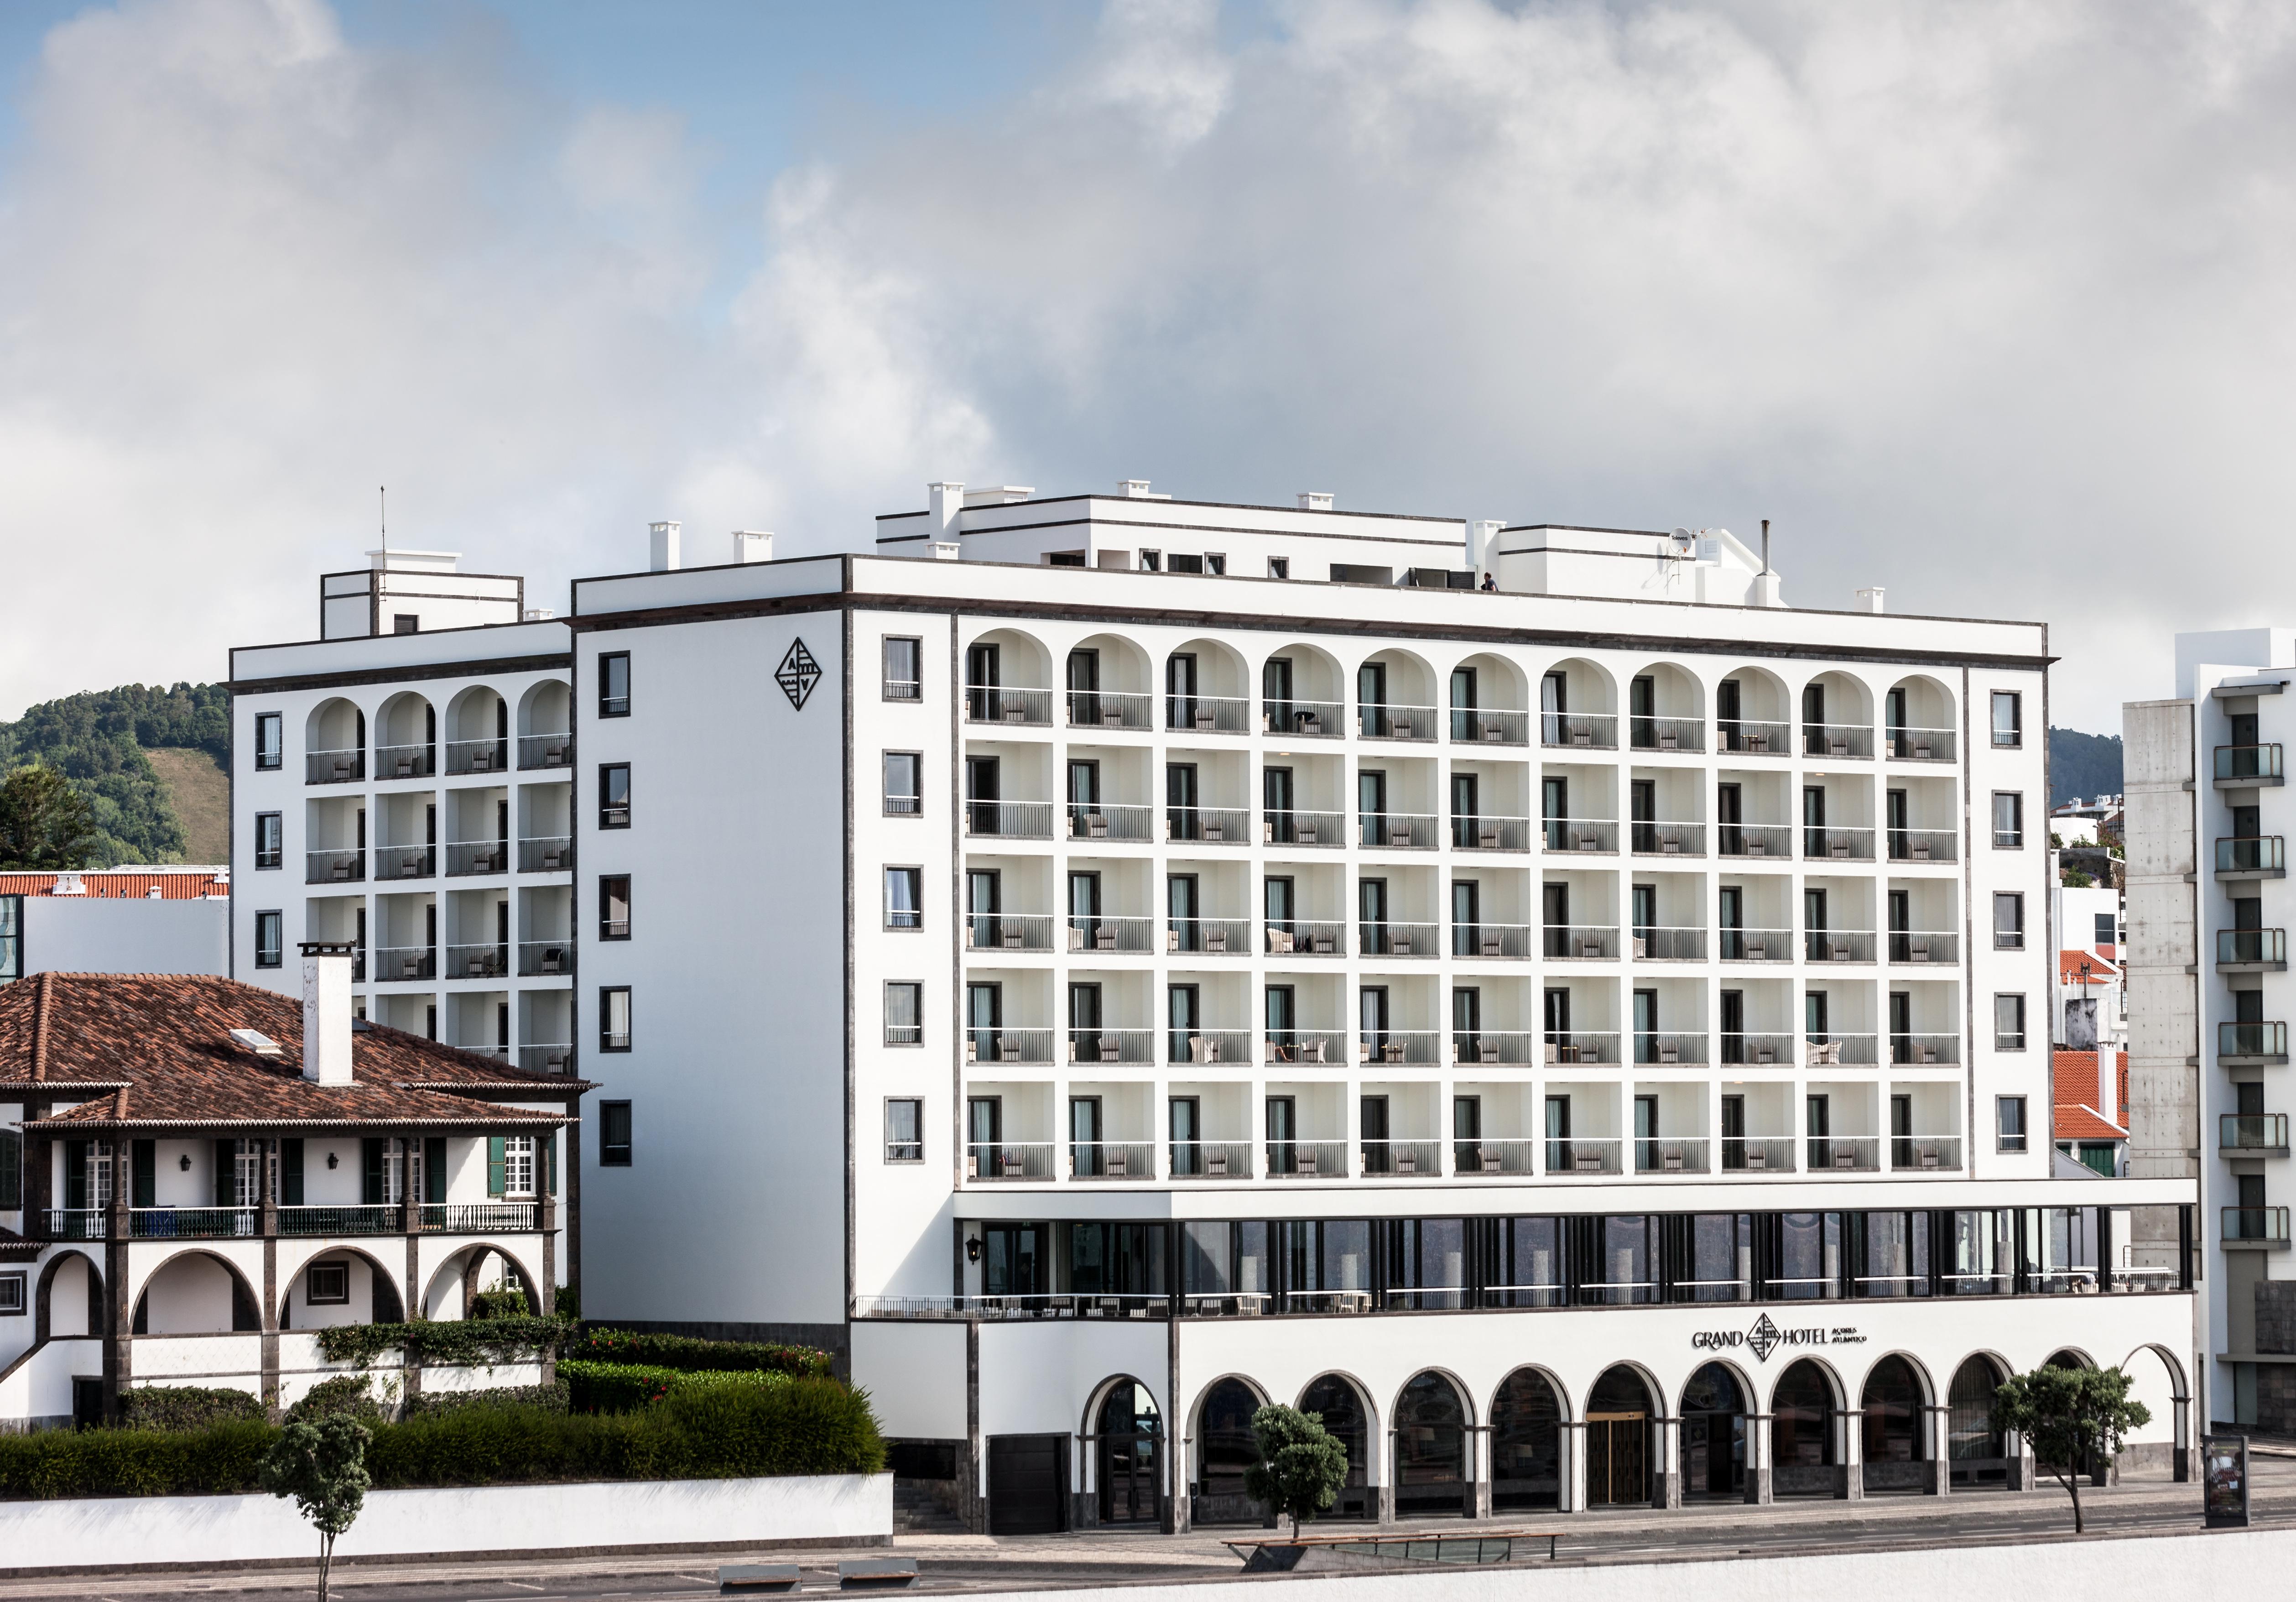 Grand Hotel Acores Atlantico Ponta Delgada Kültér fotó